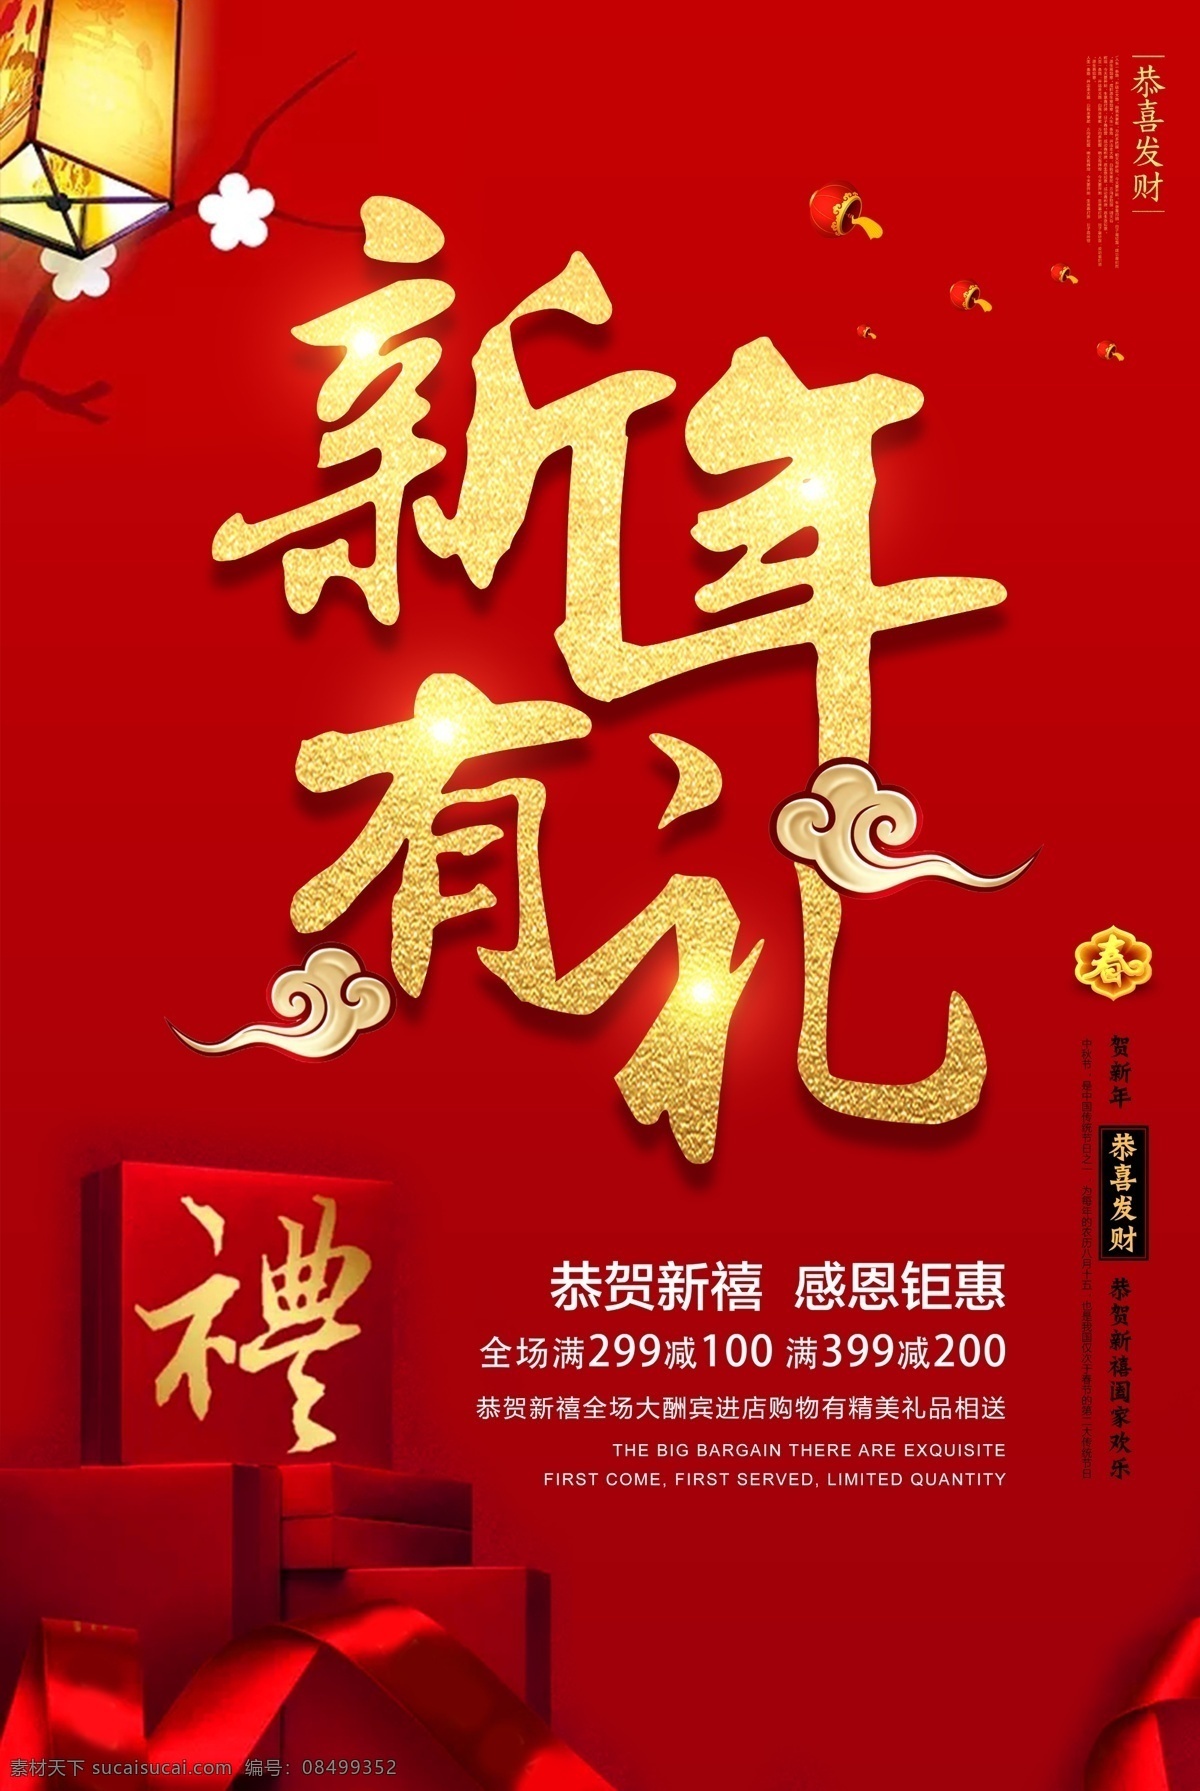 新年 礼节 日 海报 有礼 节日祝福 红色背景 红色礼物